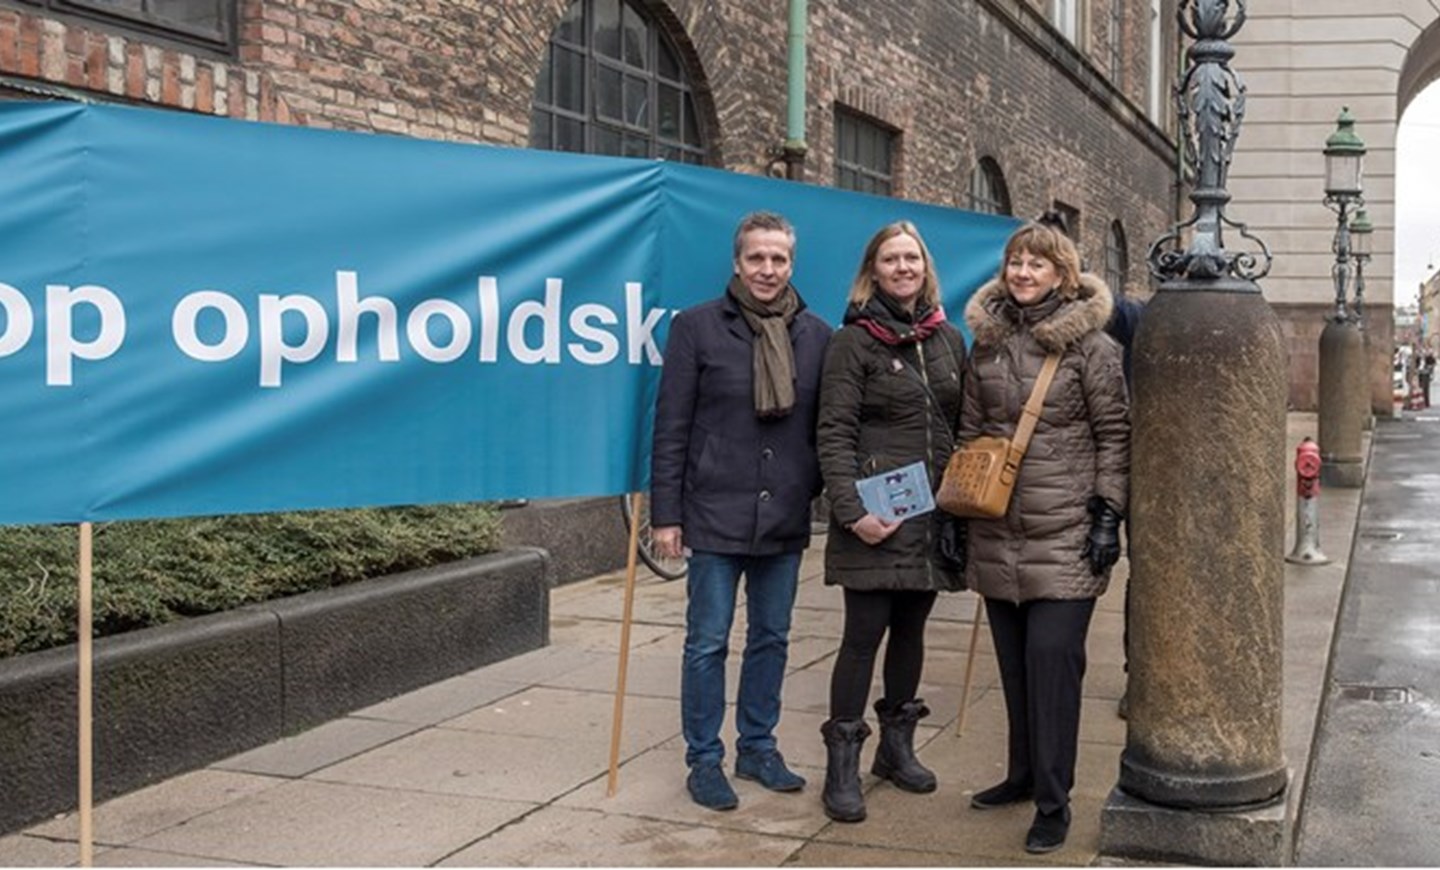 I december 2018 demonstrerede Fødevareforbundet NNF's forsikringschef Marie Beck Jensen (i midten) og andre repræsentanter fra a-kasser og fagbevægelsen mod opholdskravet hver dag i en uge foran Folketinget. Foto er udlånt af Arbejderen.dk